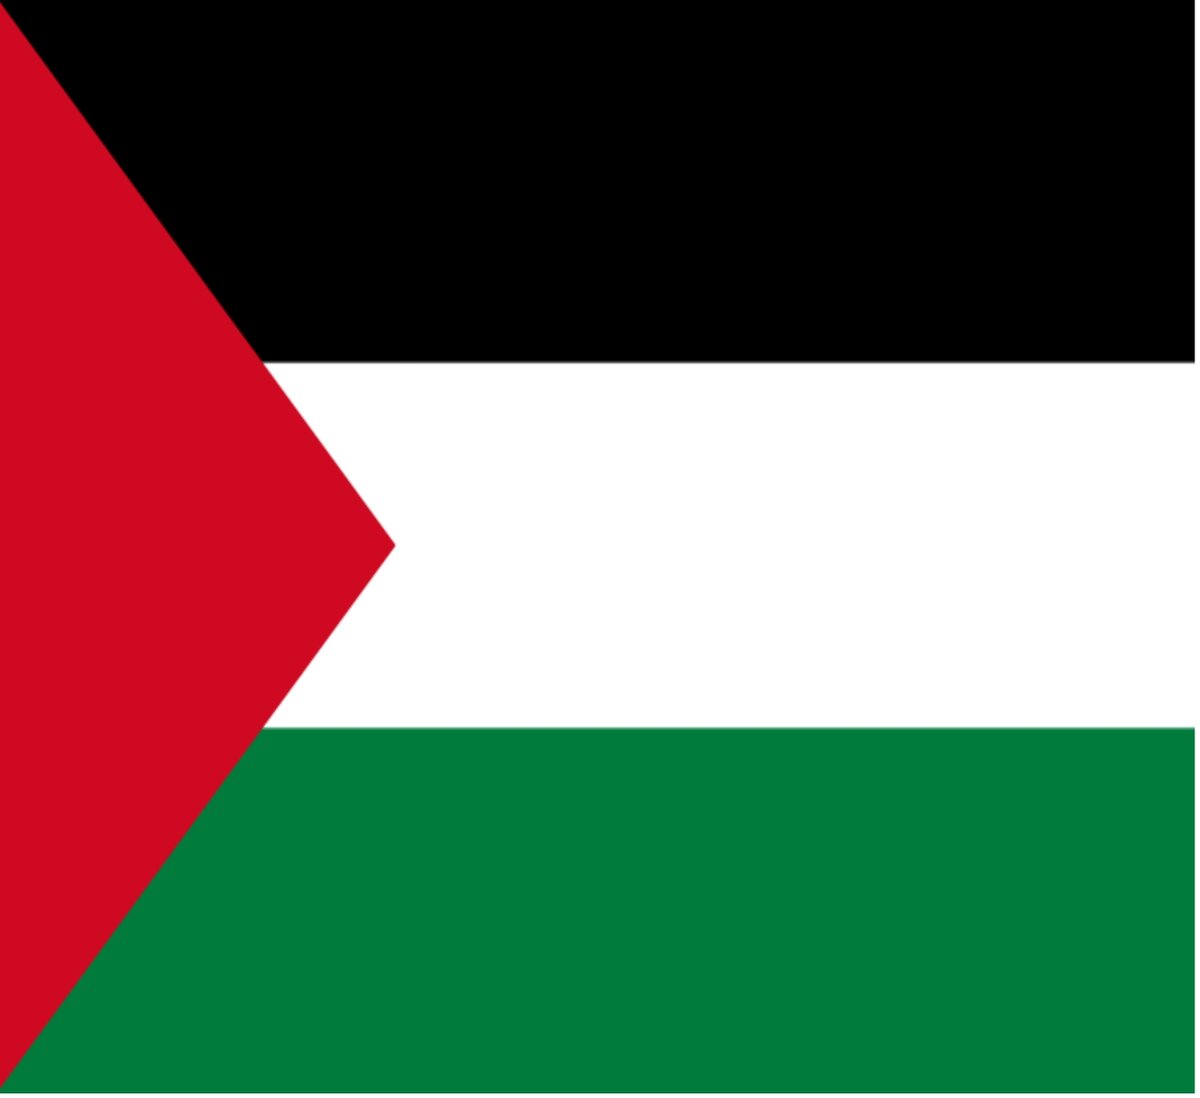 Filistin bayrağı üzerinde aşırı milliyetçi mesajlar vardır. 
Siyah Abbasileri, 
yeşil Fatimileri, 
beyaz da Emevileri temsil ediyor. Kırmızı üçgen ise Arapların Türklere karşı isyanlarında döktükleri kanı sembolize ediyor. 
Acı ama yıllardır ağladığımız 'Filistin gerçeği’ budur!